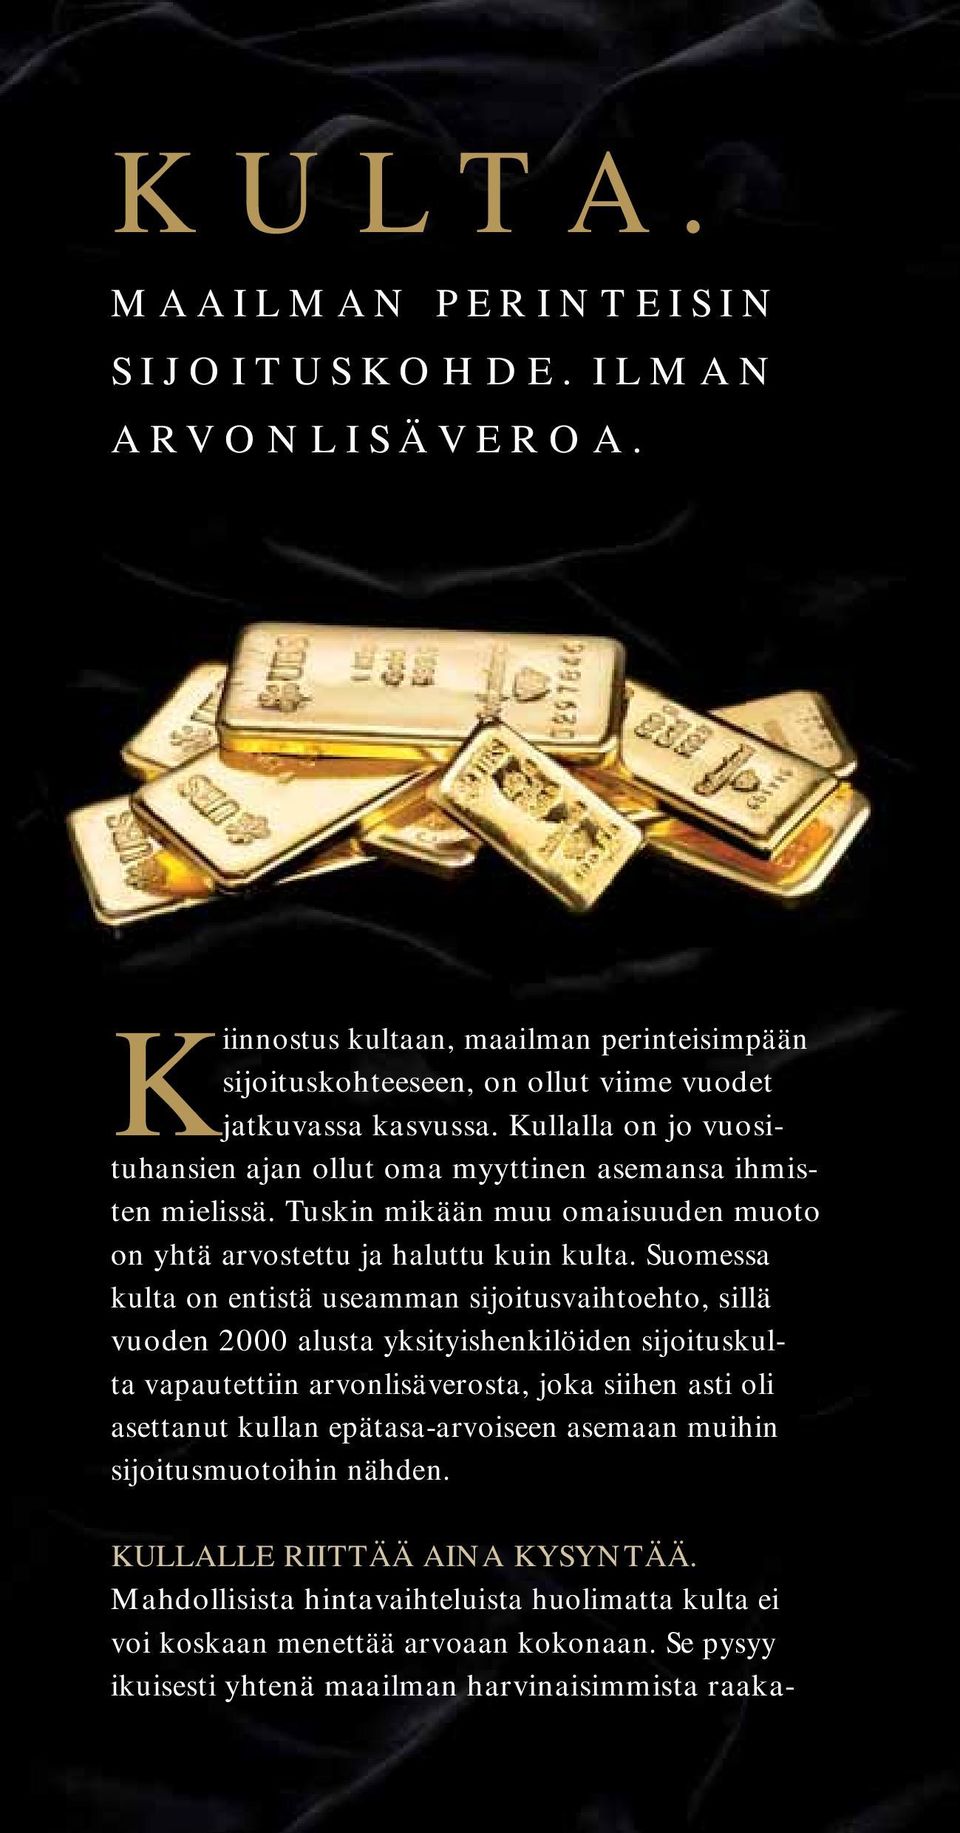 Suomessa kulta on entistä useamman sijoitusvaihtoehto, sillä vuoden 2000 alusta yksityishenkilöiden sijoituskulta vapautettiin arvonlisäverosta, joka siihen asti oli asettanut kullan